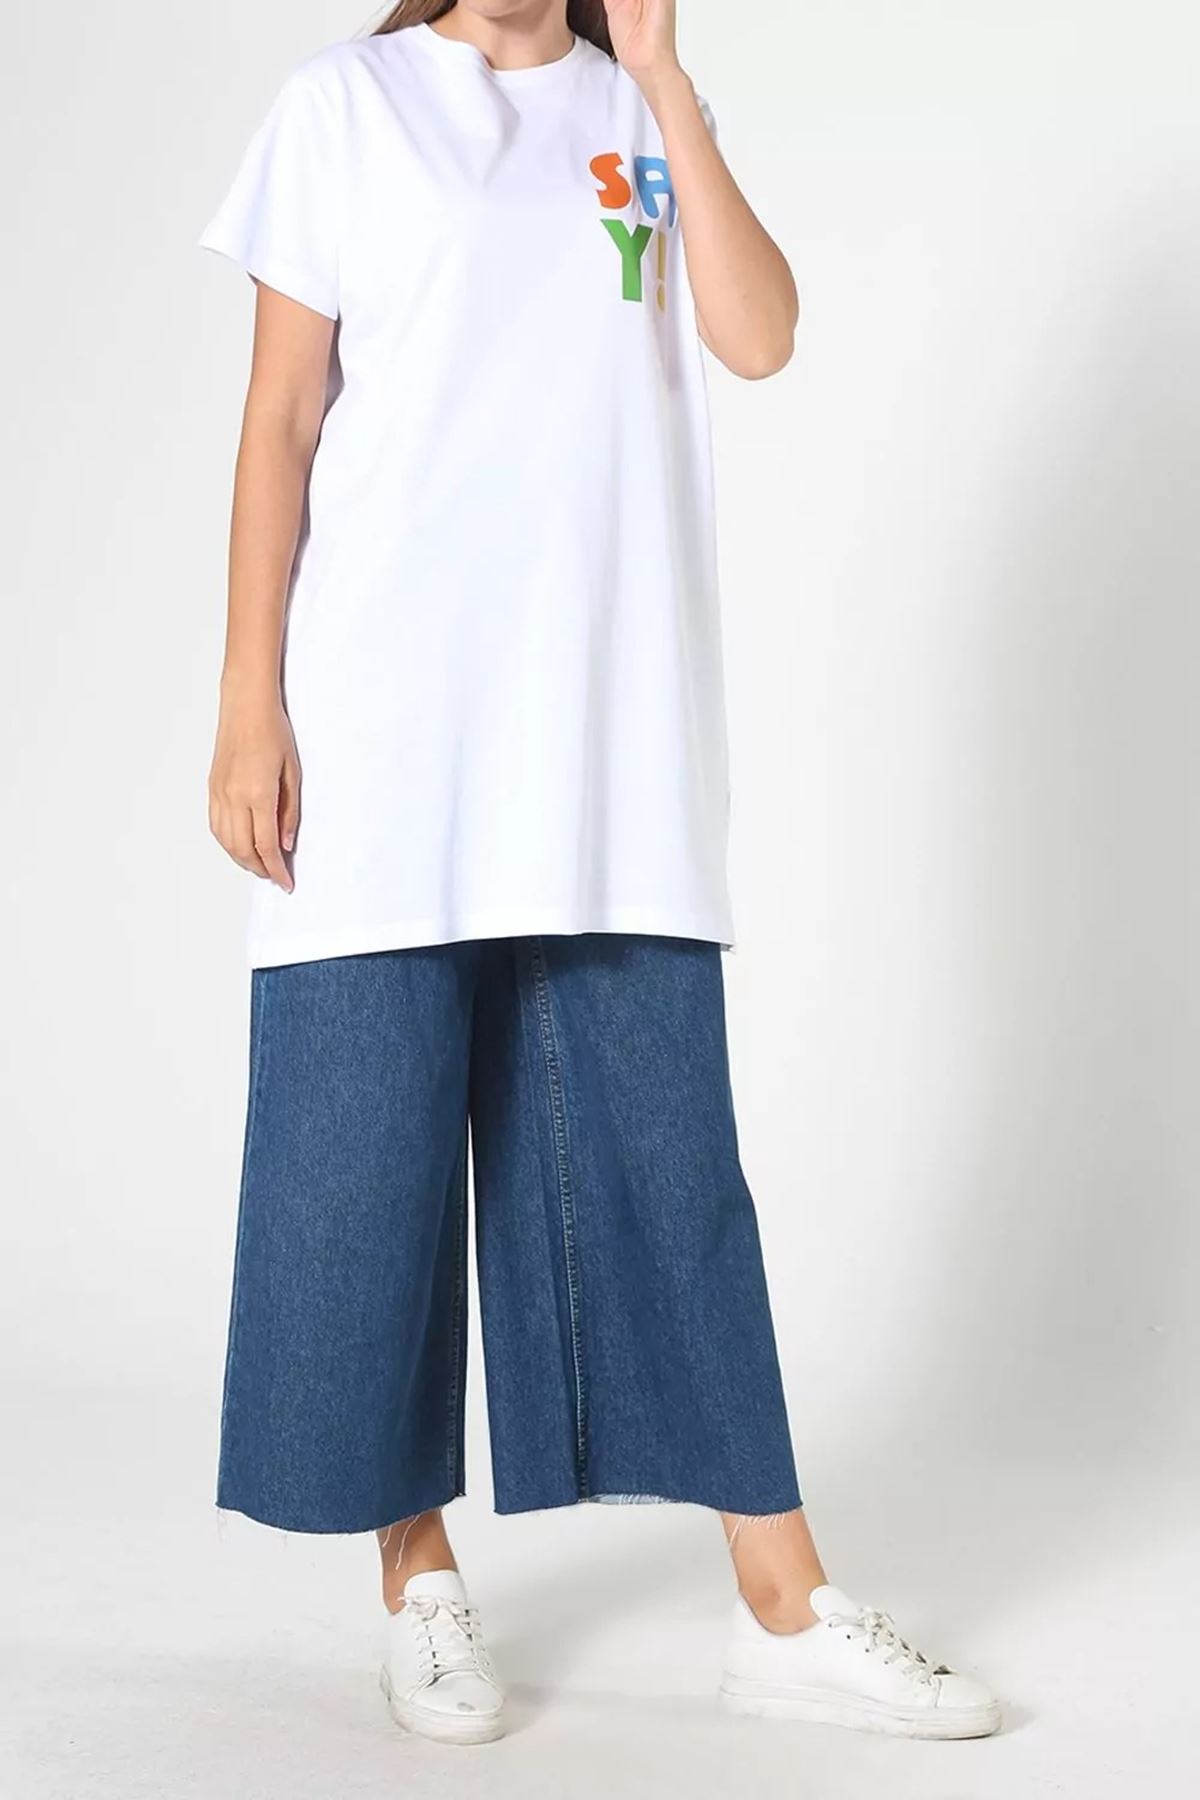 Kadın Baskılı Uzun T-Shirt - Beyaz